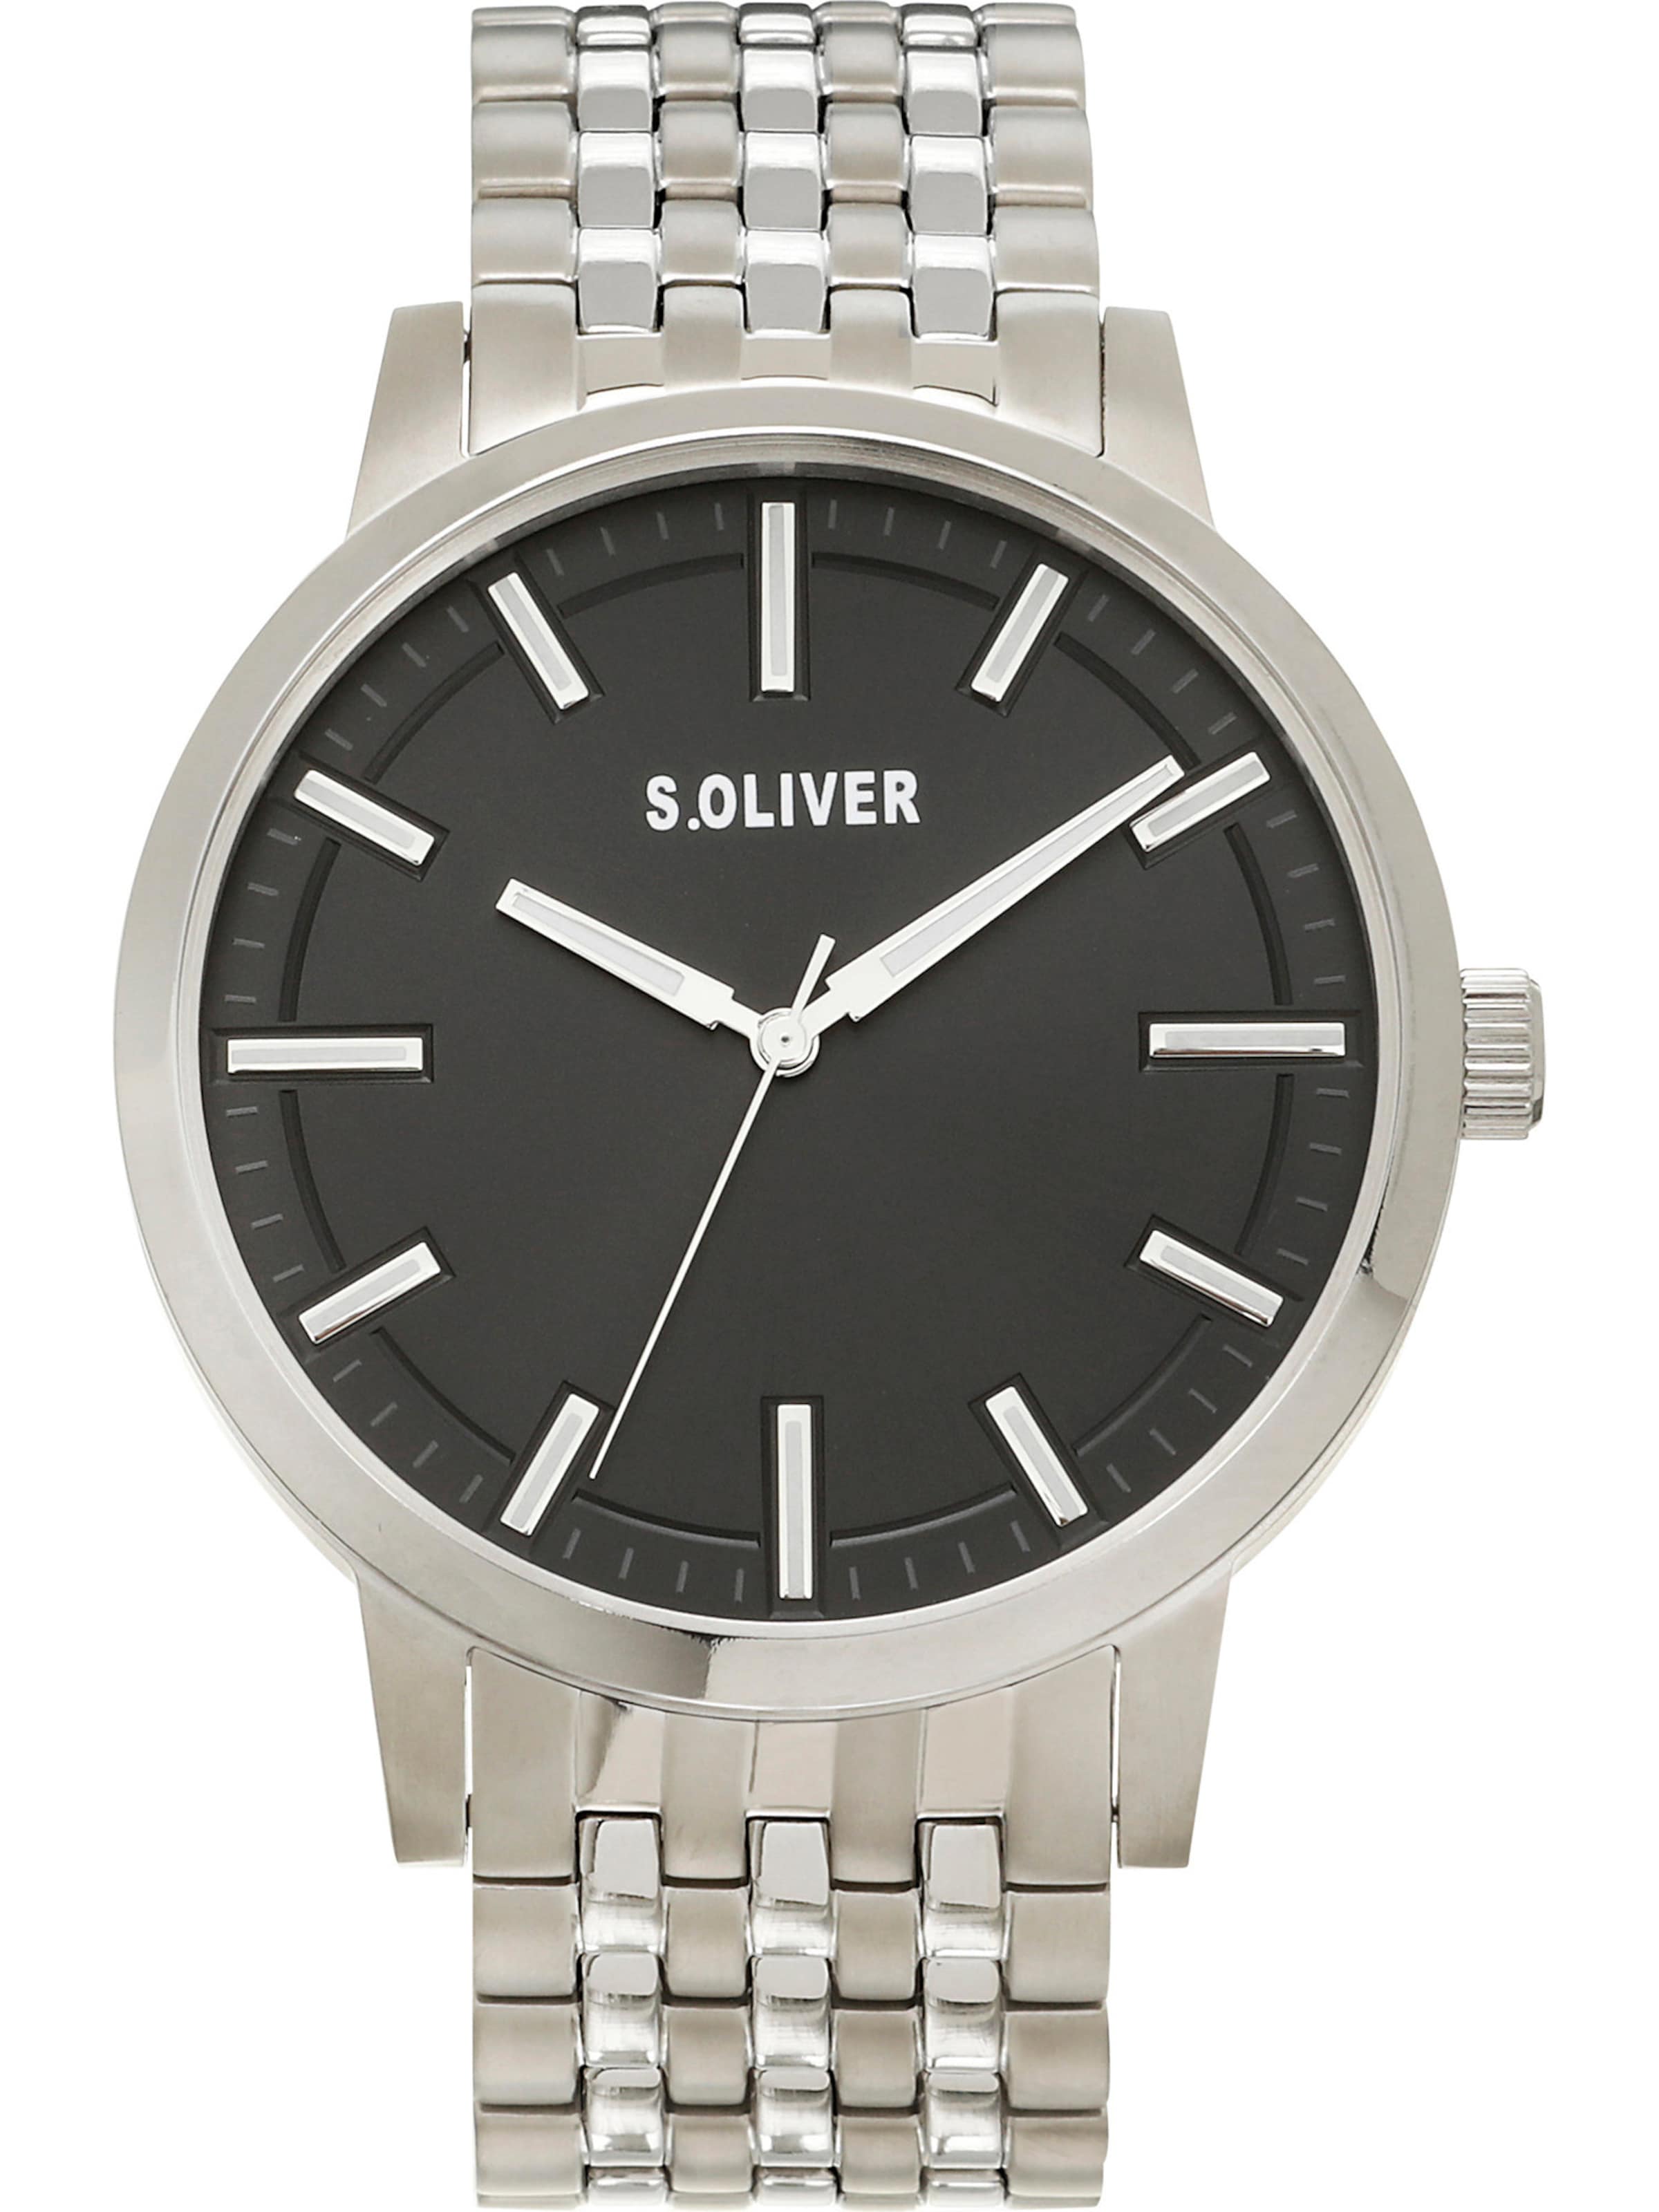 Männer Uhren s.Oliver Uhr in Silber - JE59144